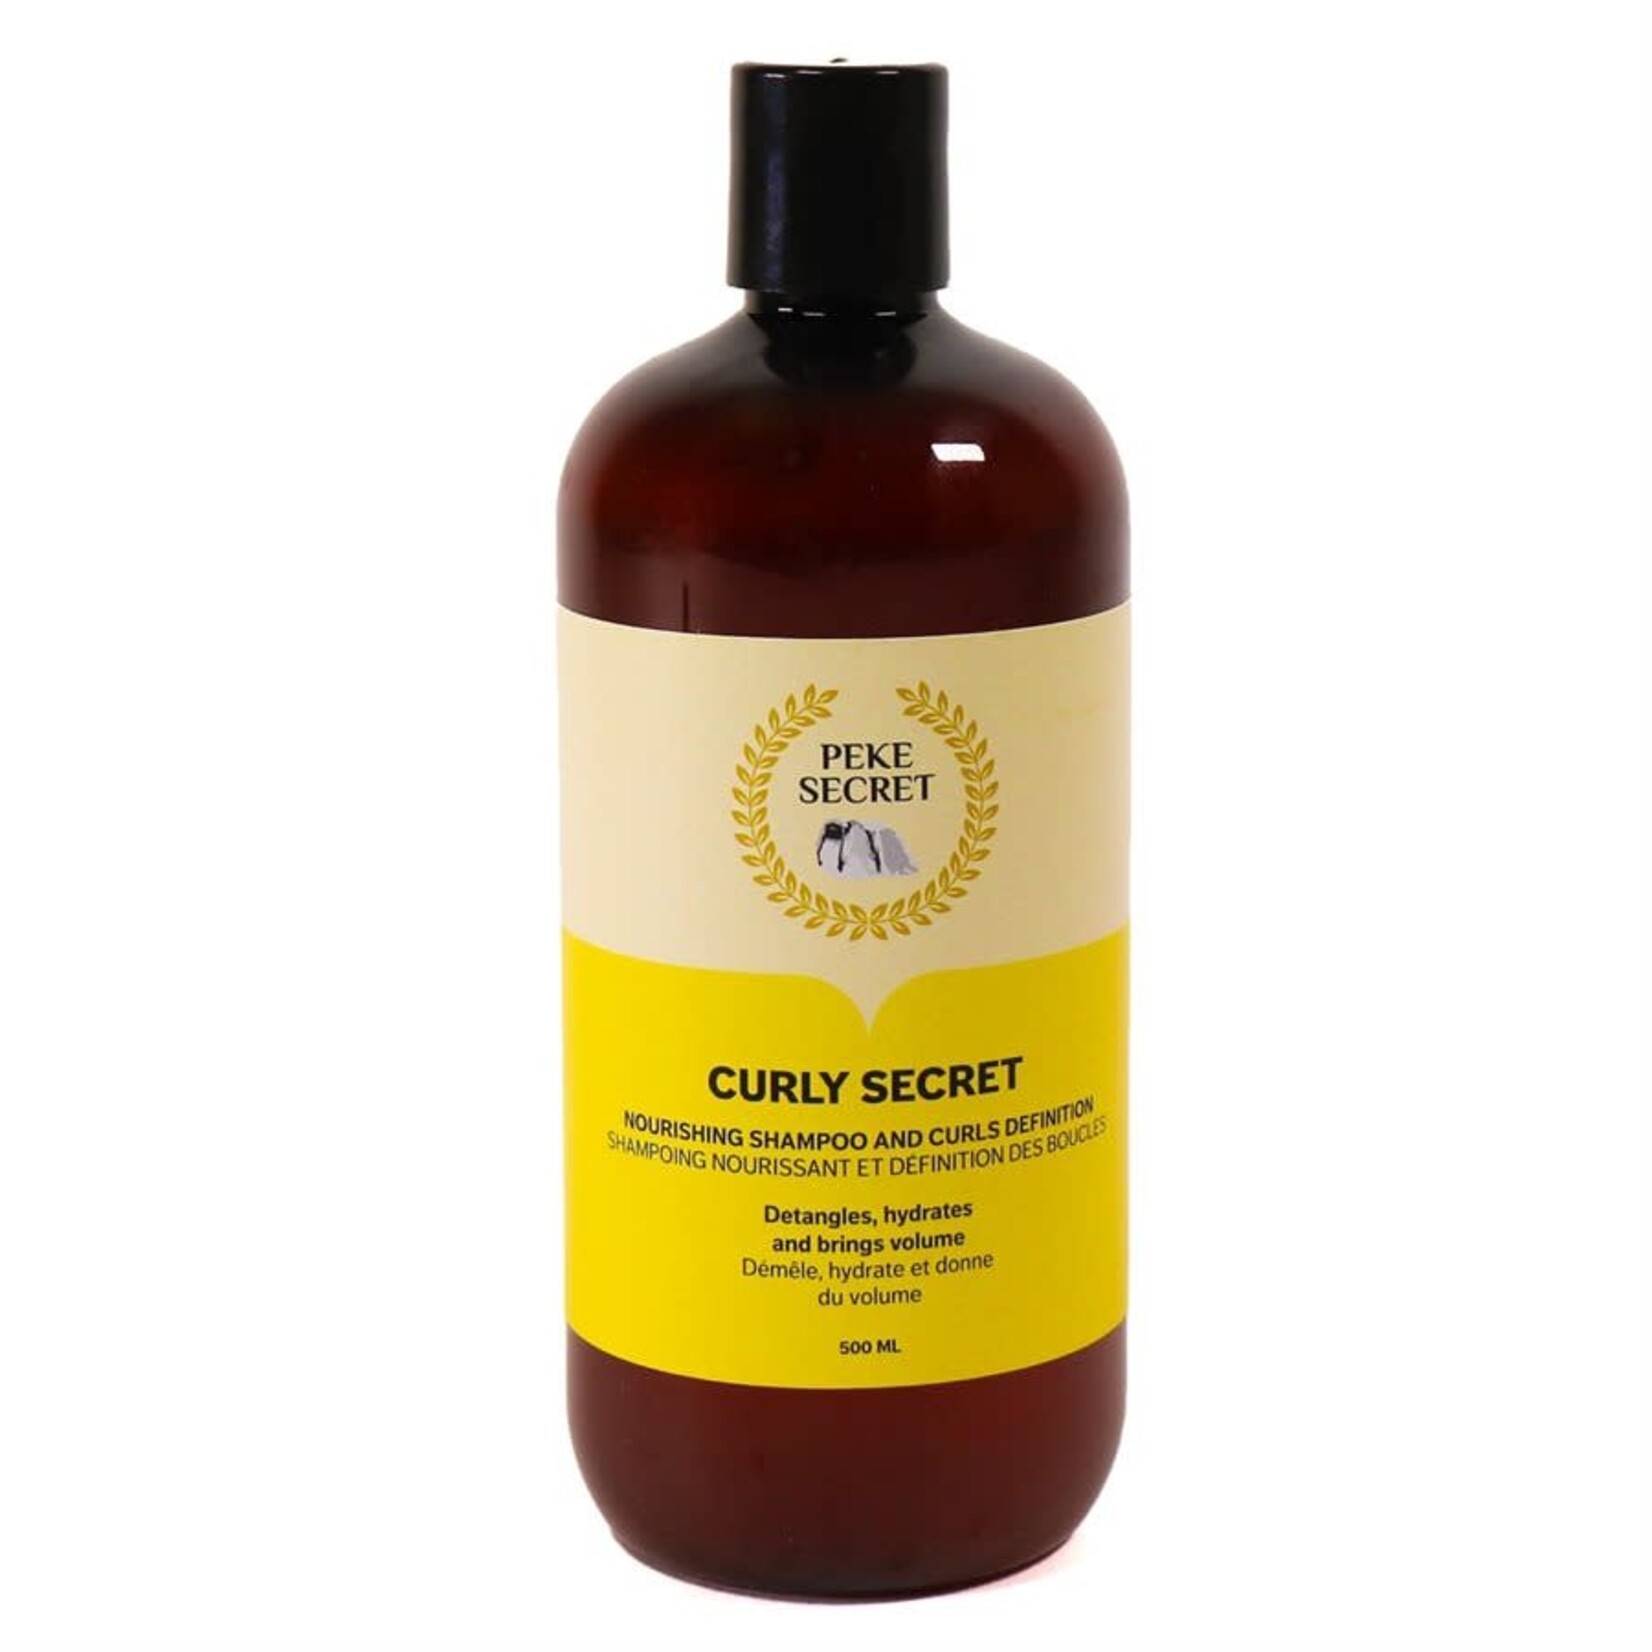 Peke Secret Peke Secret - Curly Secret Shampoing nourissant et définition des boucles 500mL